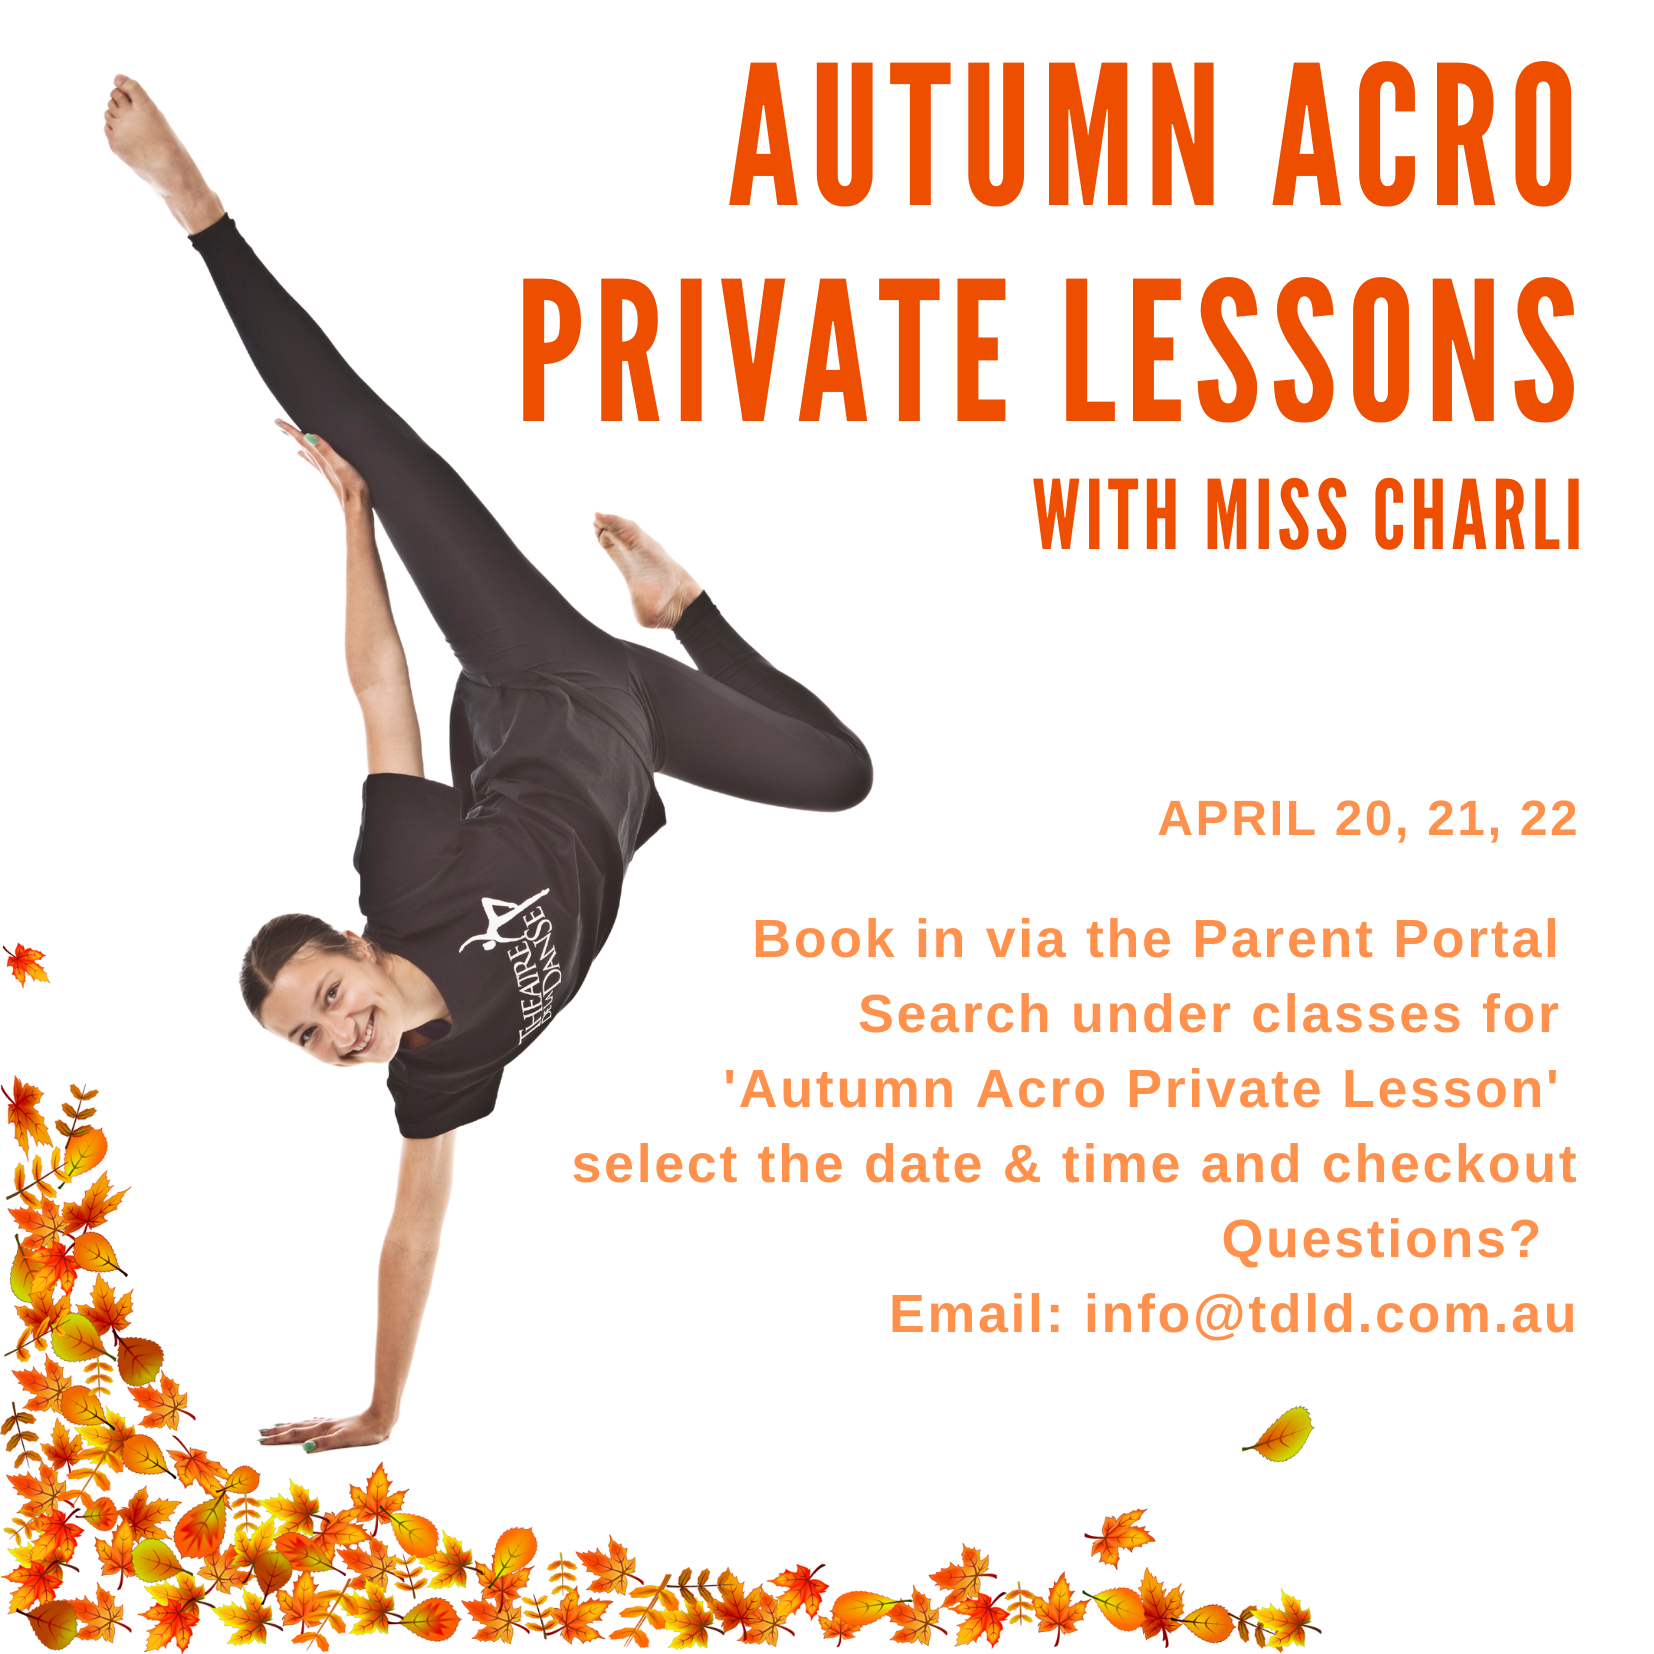 Autumn acro private lessons 2022